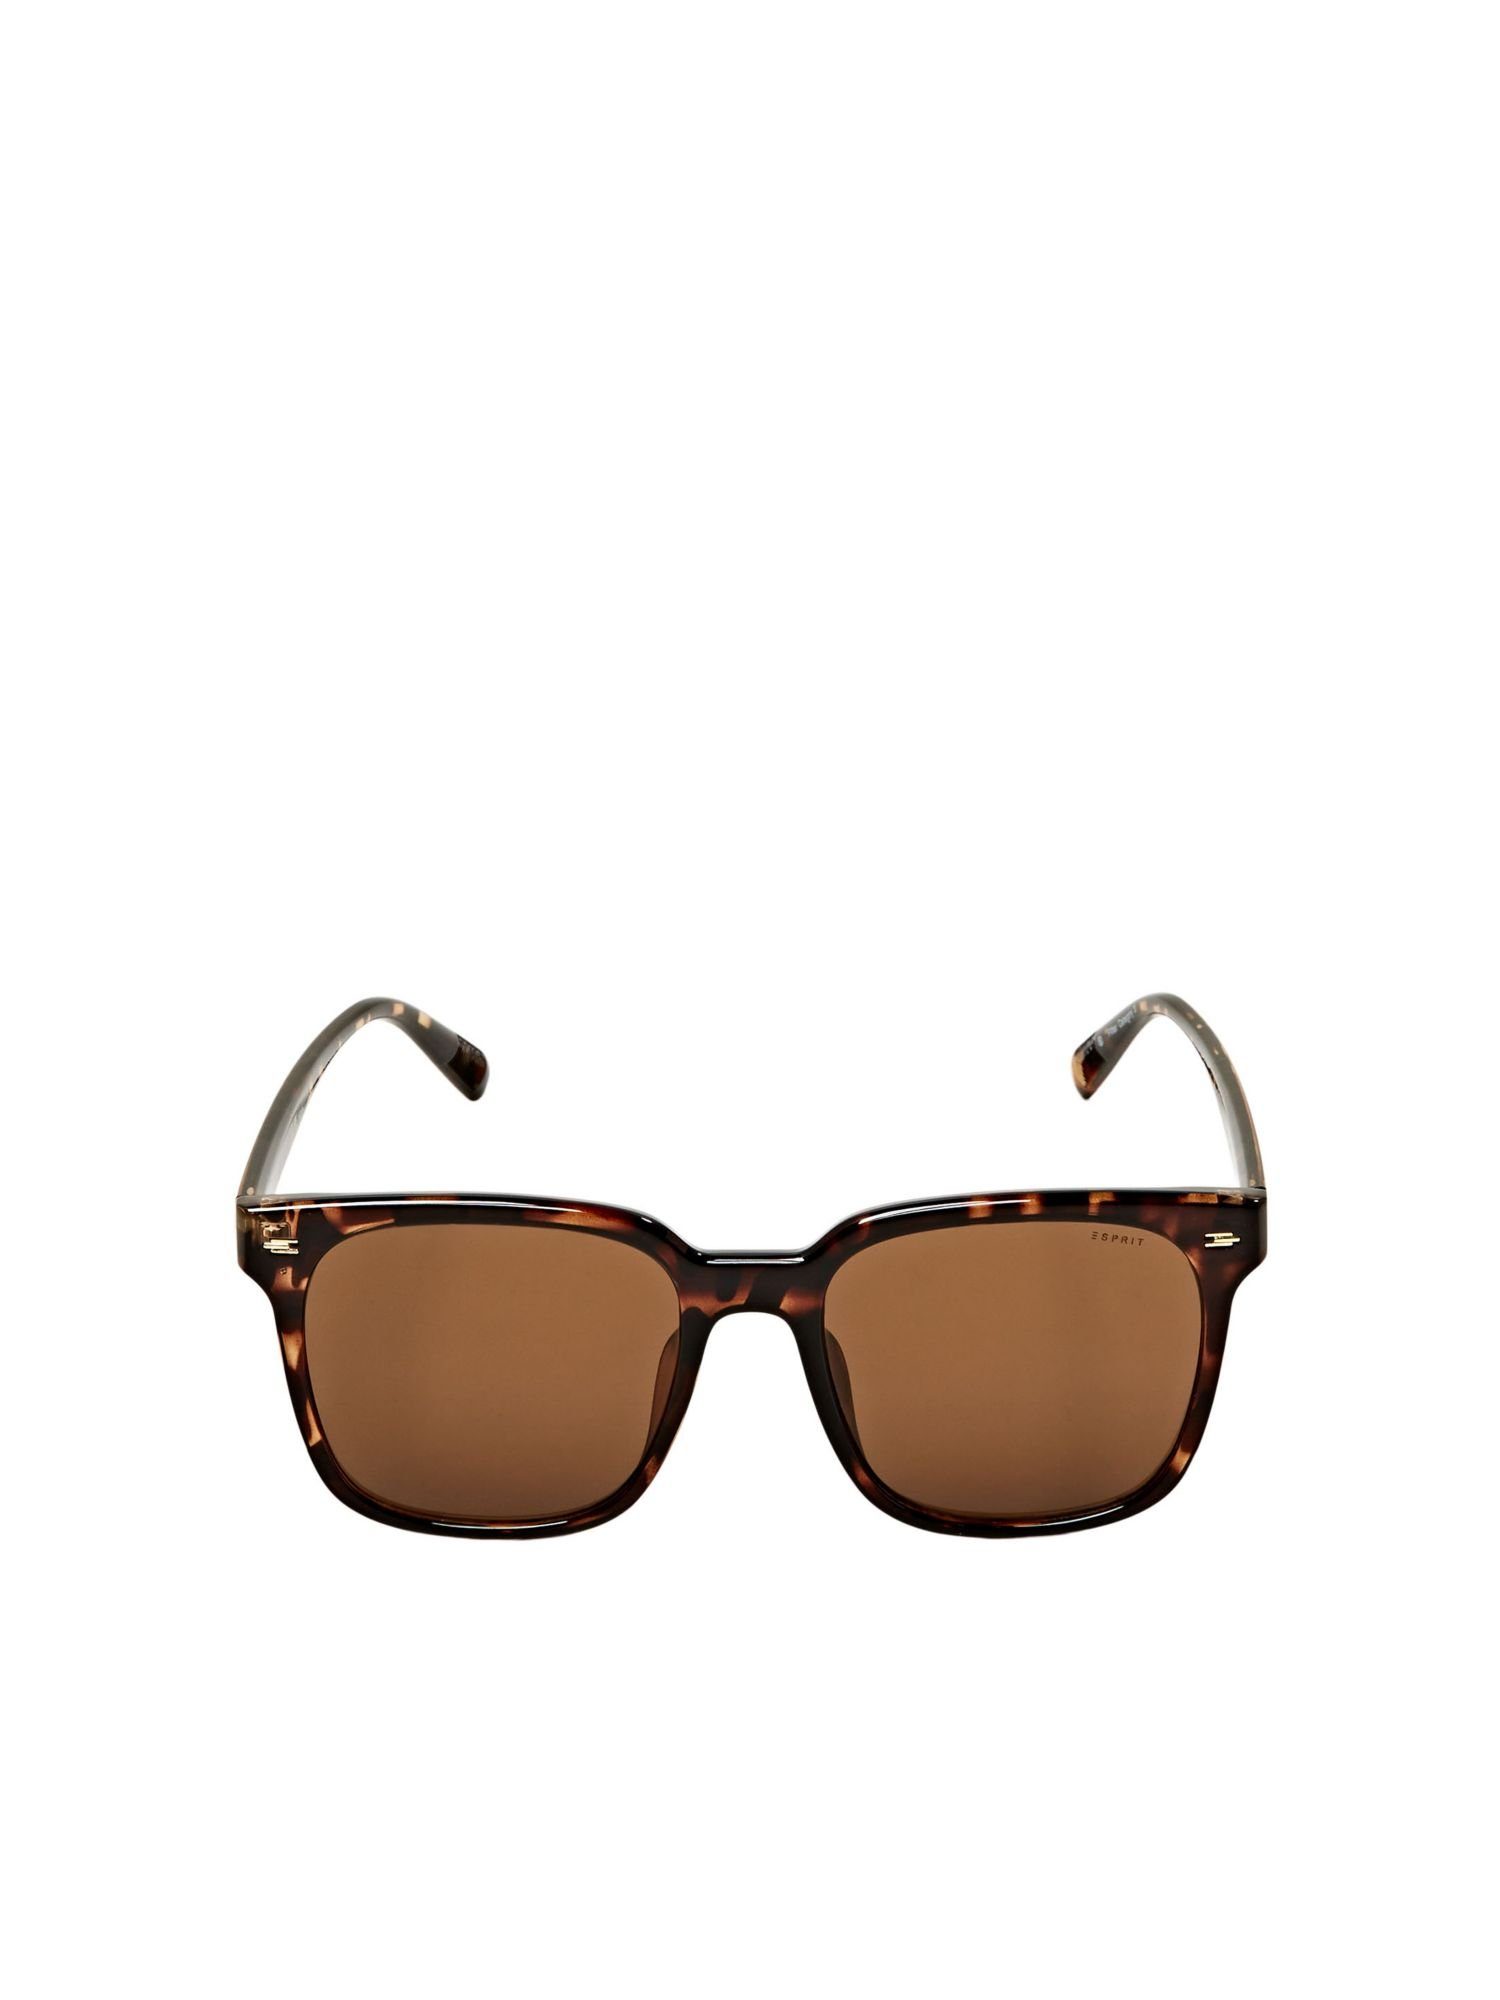 Esprit Sonnenbrille Leichte Sonnenbrille aus Acetat, UV-Filter-Kategorie 3:  bietet UV-Schutz bei sehr hellem Sonnenlicht